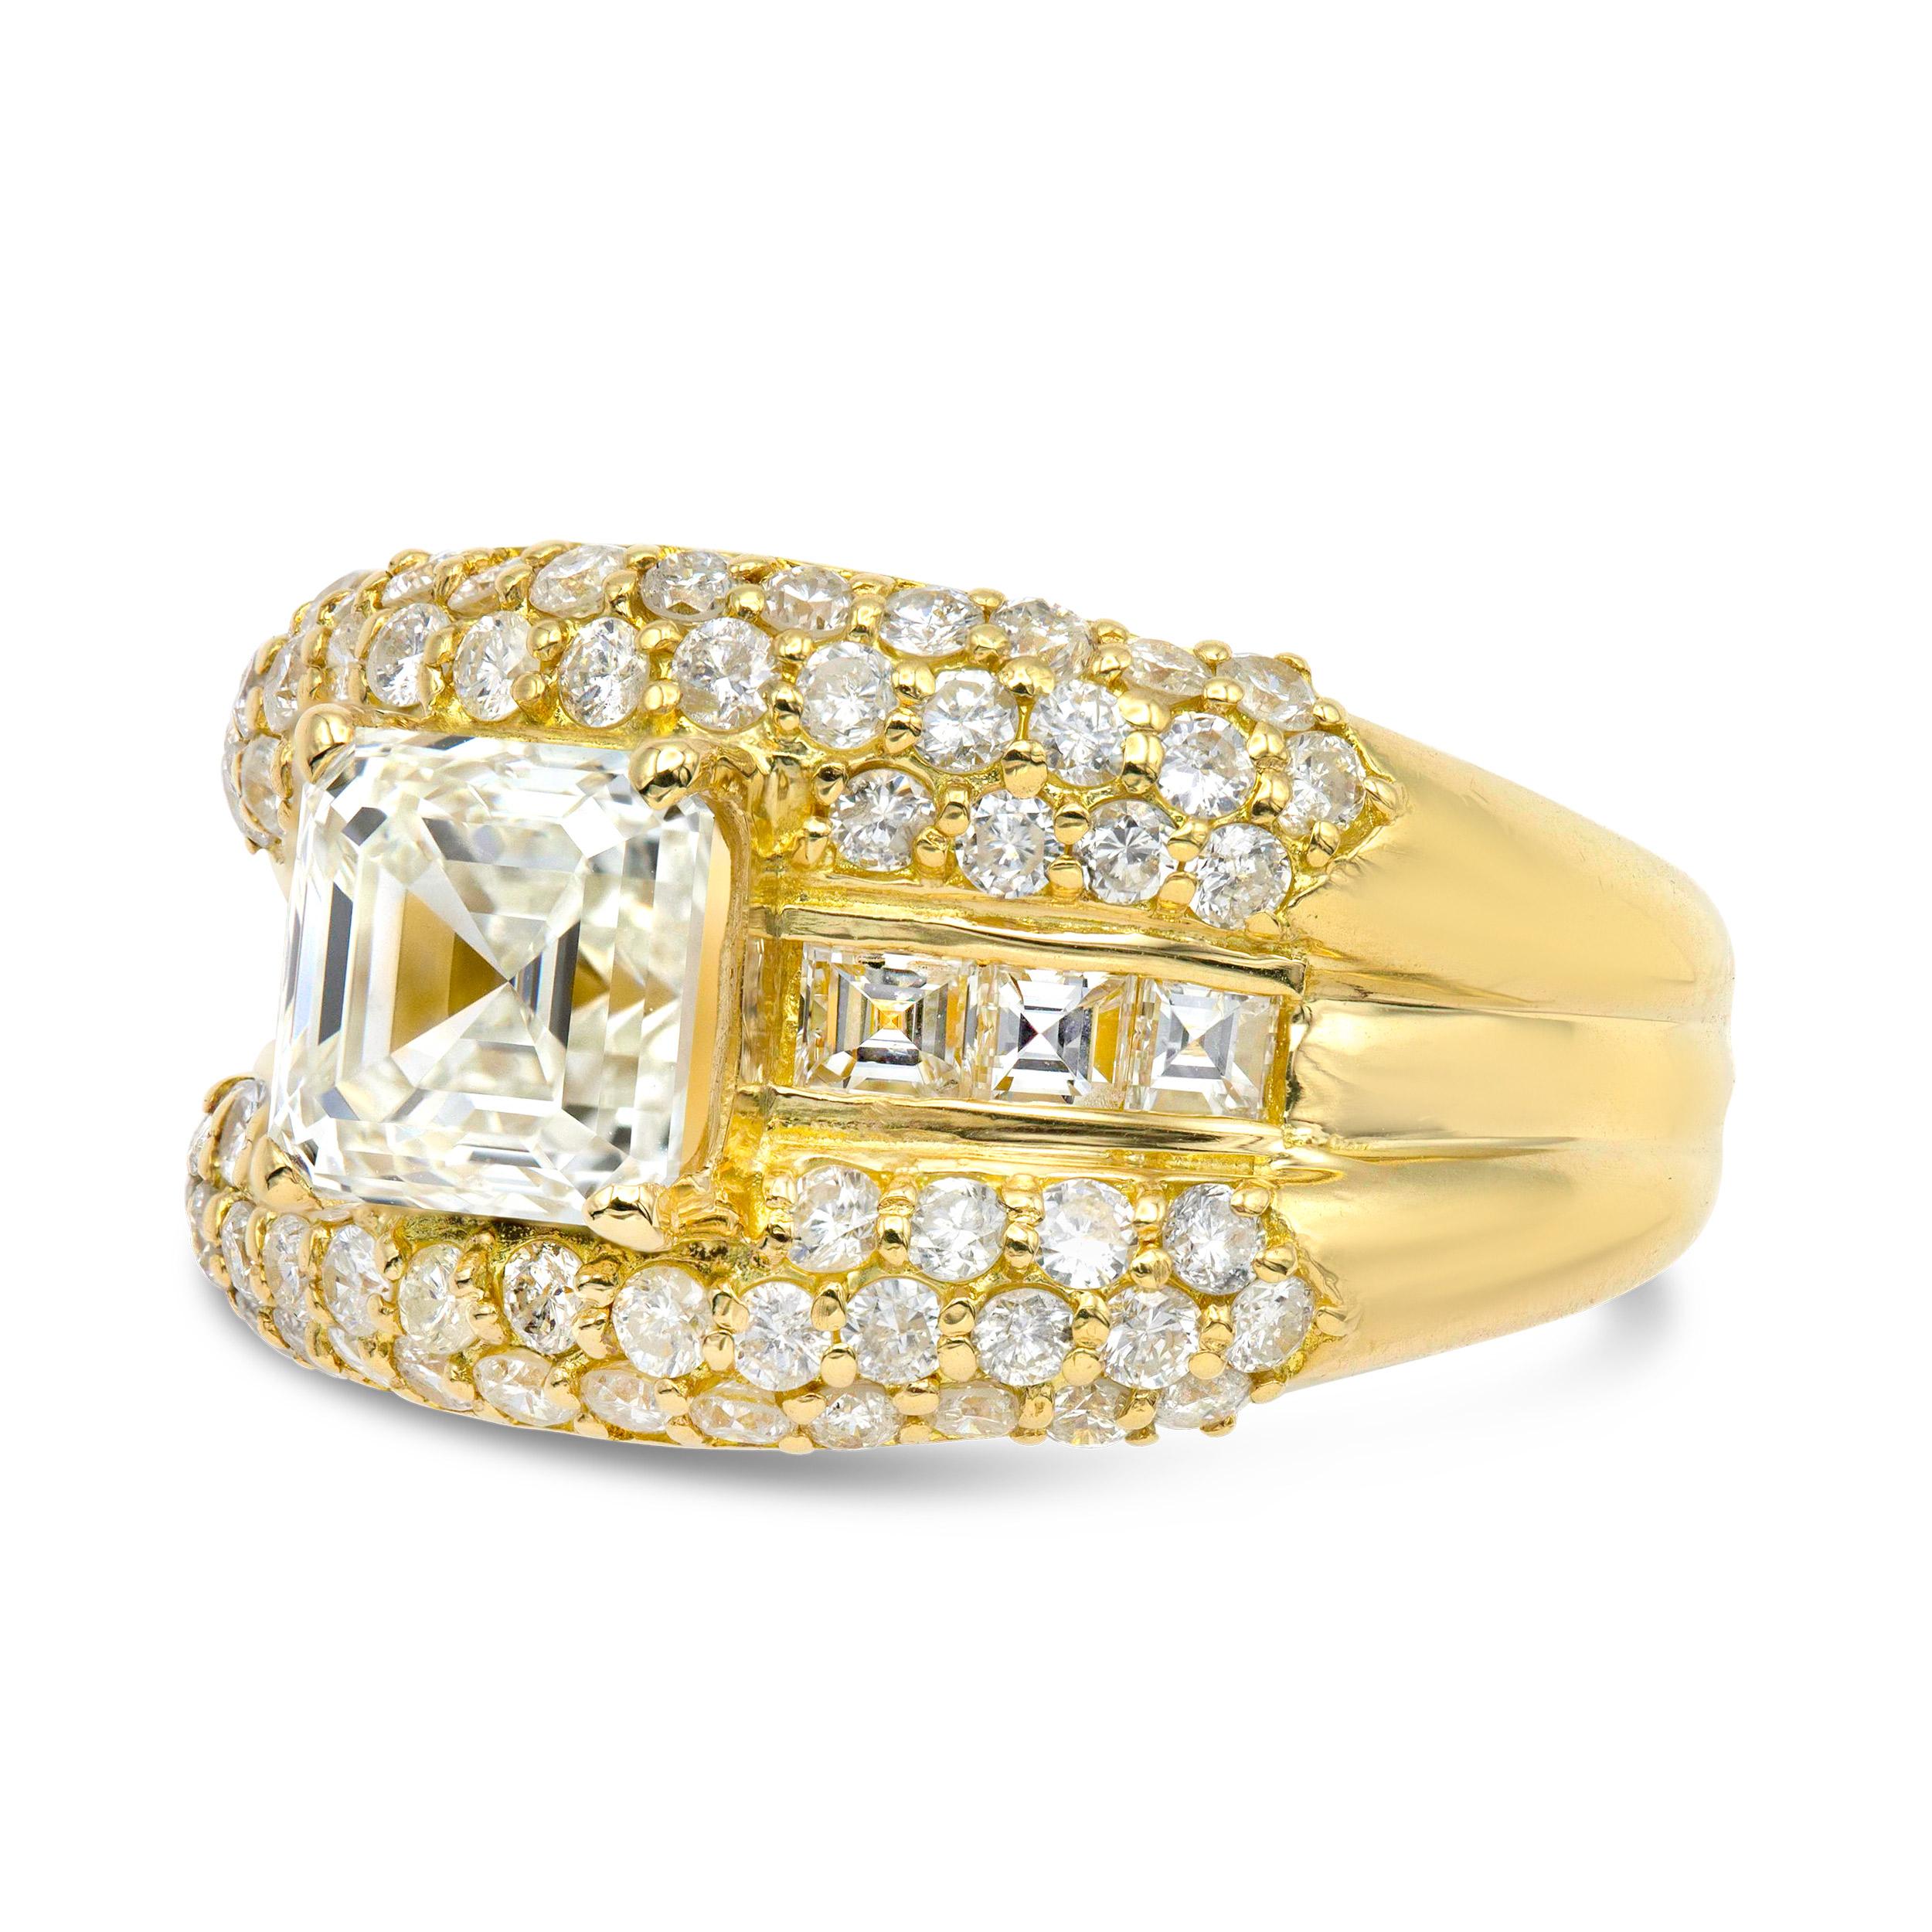 Ein gewagter All-Over-Look aus Gelbgold und Diamanten für die Frau, die gerne auffällt. Im Mittelpunkt steht ein heller, quadratischer Diamant im Smaragdschliff mit einem kristallklaren, abgestuften Facettenmuster. Ein echter Vintage-Charmeur. Wir